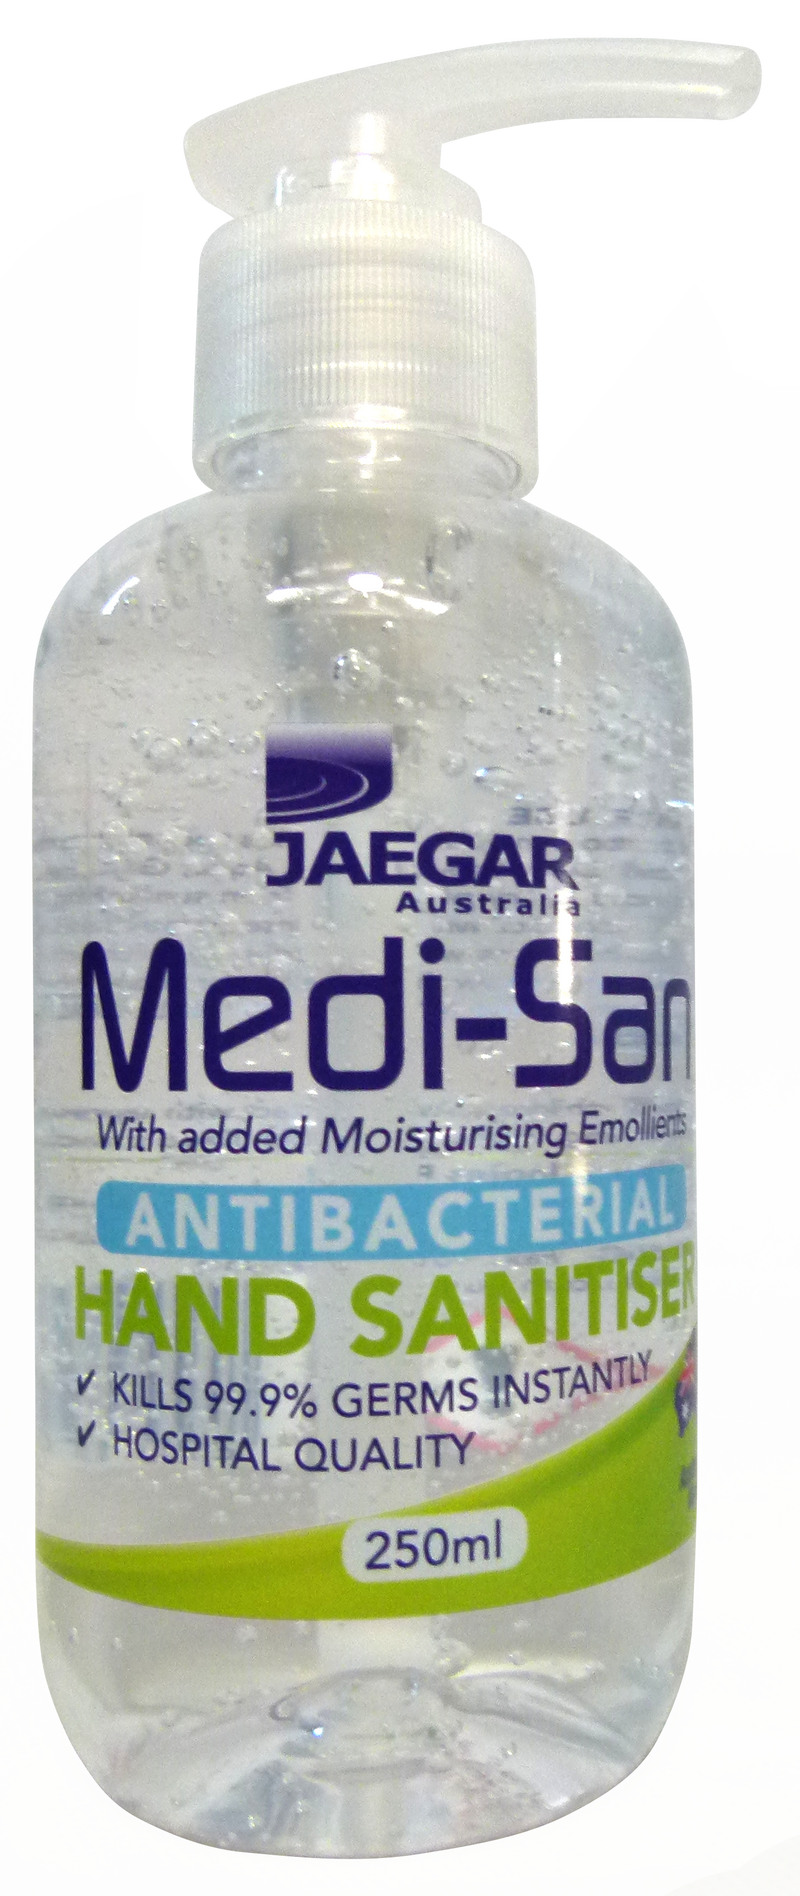 Medi-San Antibacterial Hand Sanitiser - turfmate